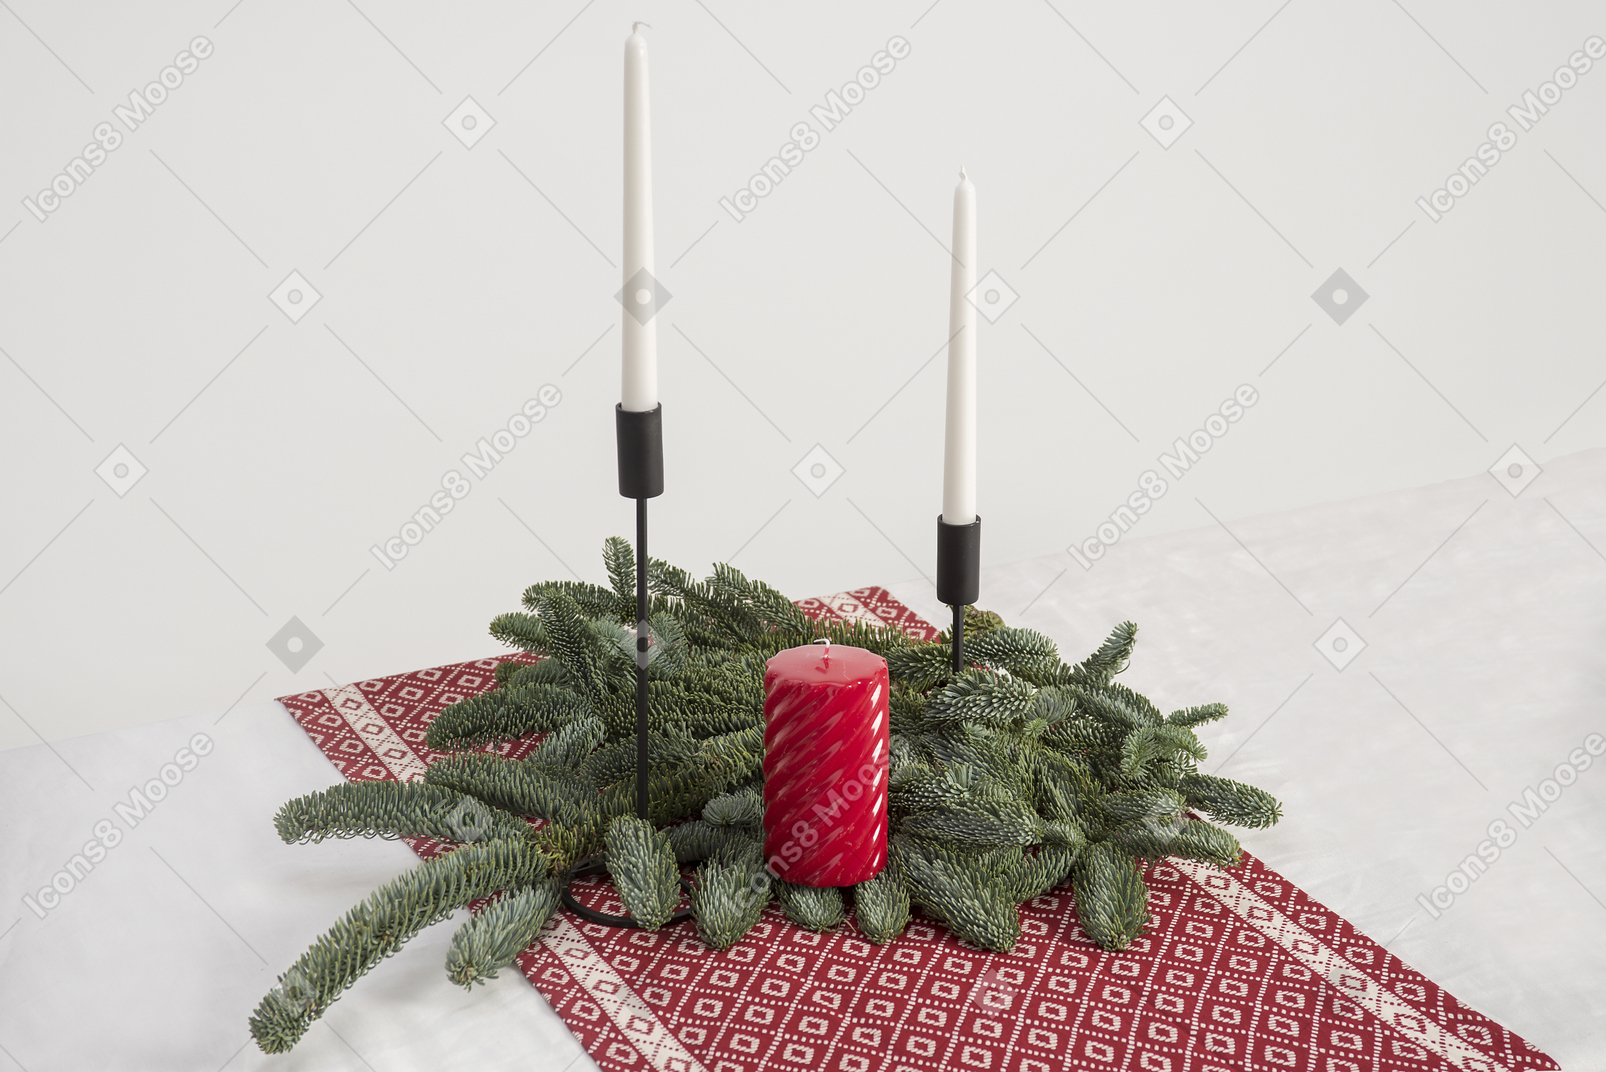 Grande candela e due candele in candelabri e ramo di albero di natale